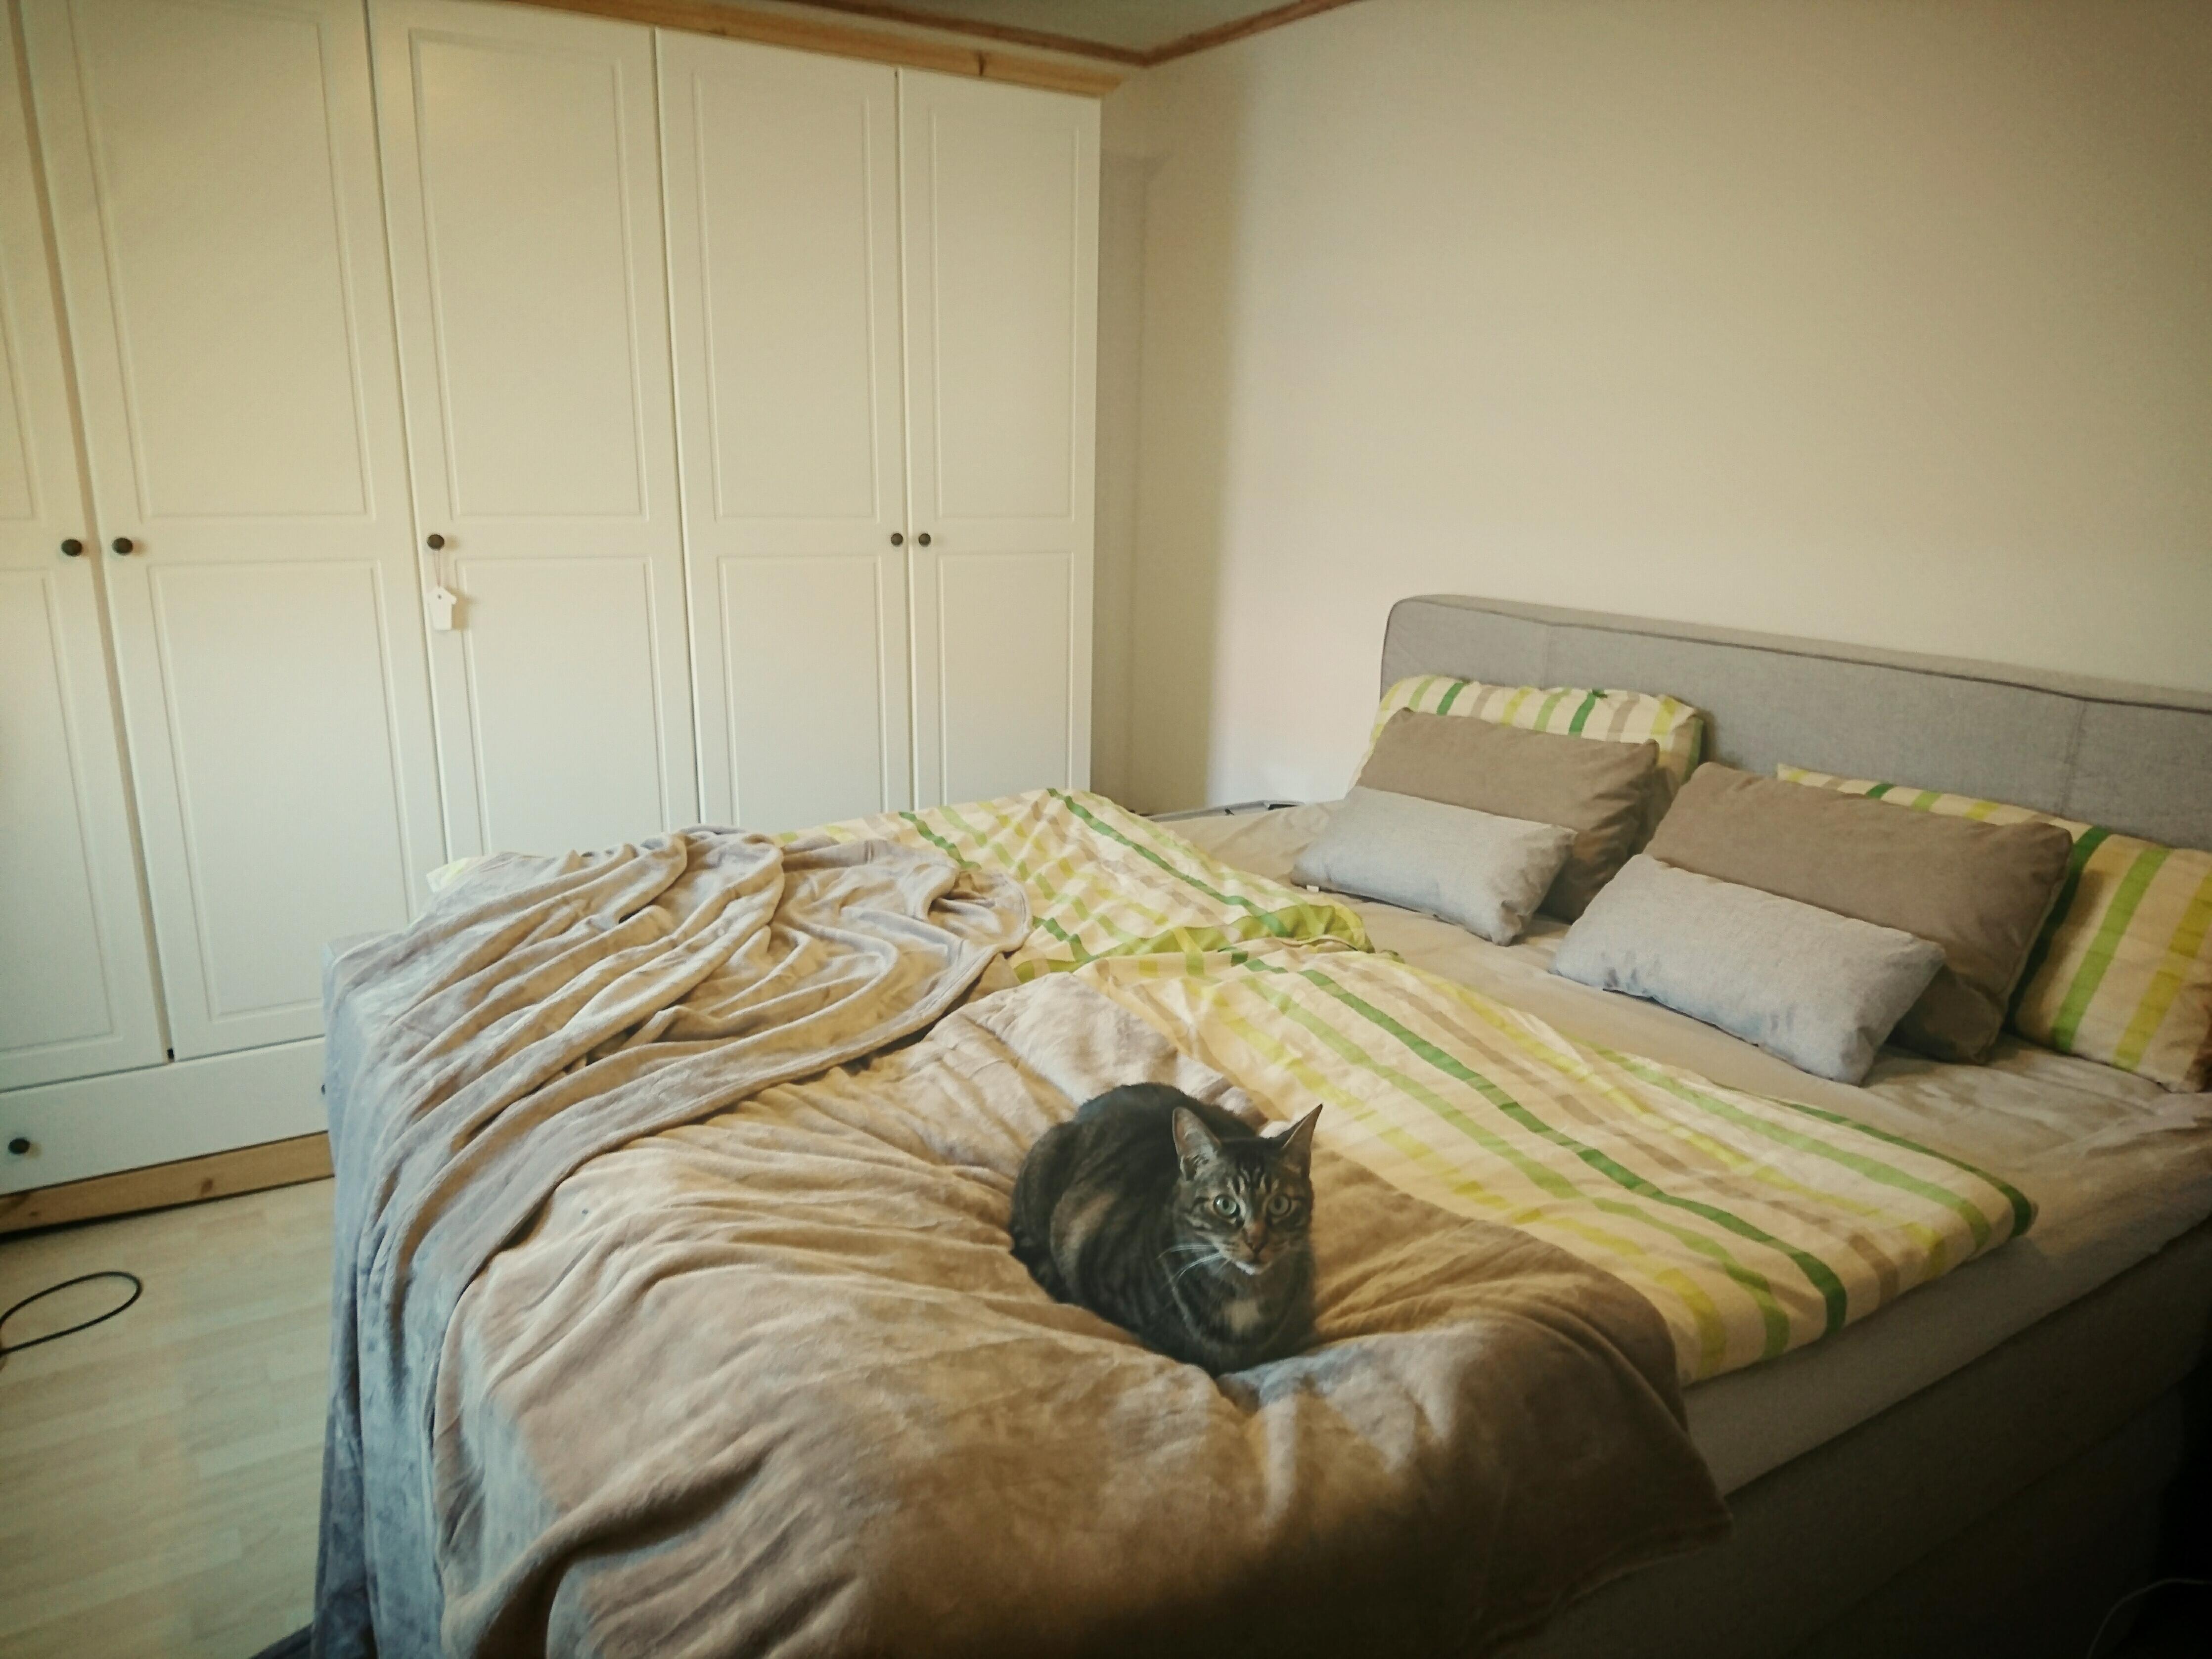 Neues Bett im frisch renoviertem Schlafzimmer, der Mietzi gefällts :)  #schlafzimmer #boxspring #katze #gemütlich 